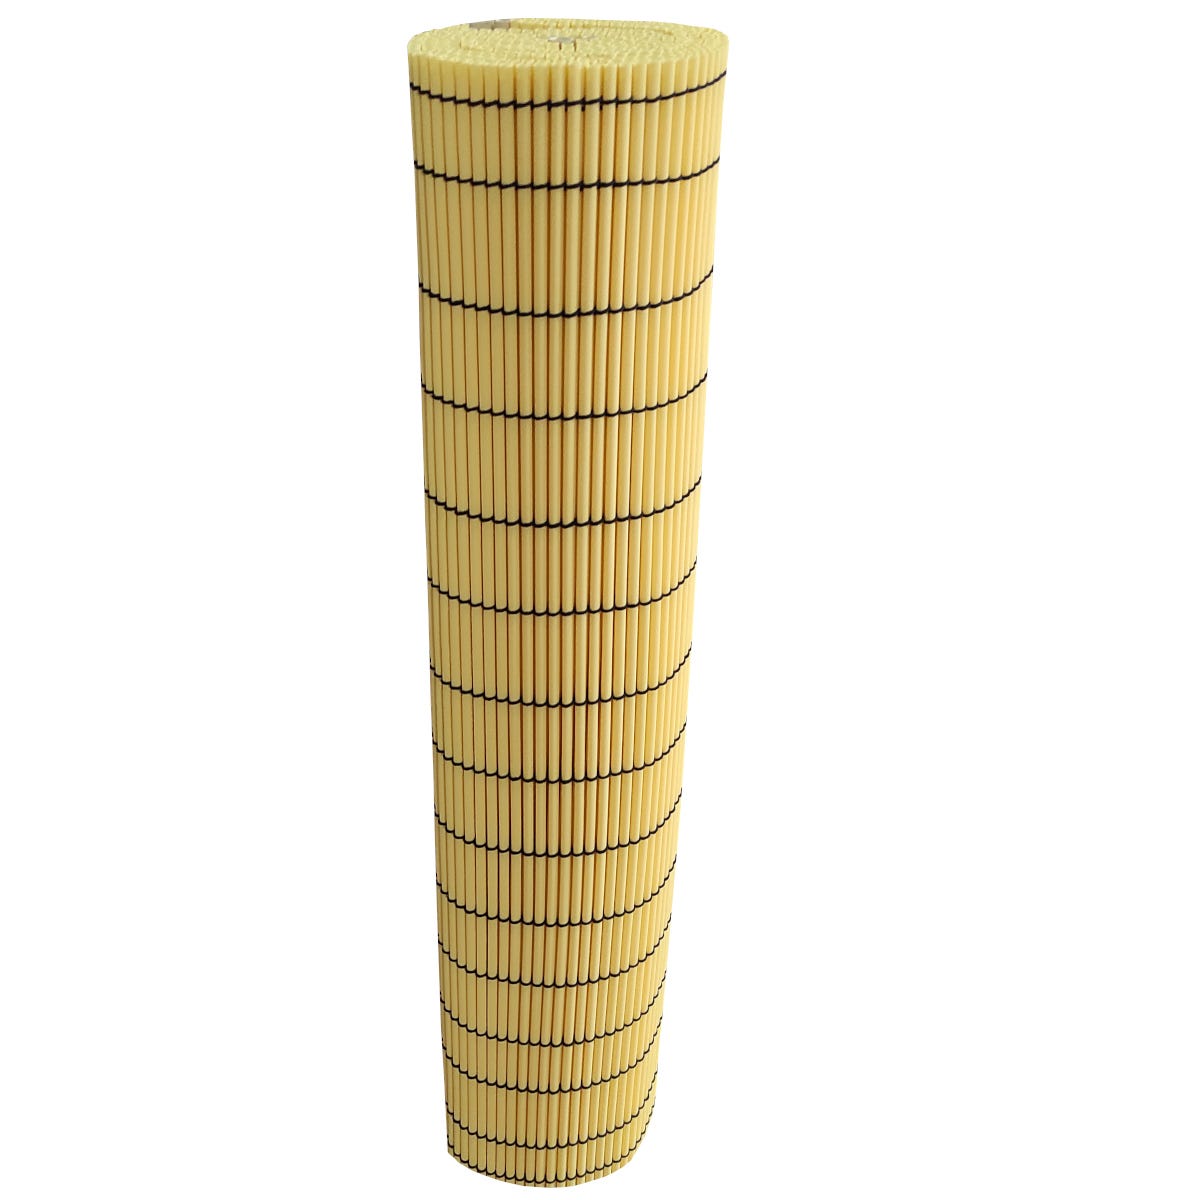 Cañizo PVC Ovalado Composición 100% PVC Con Varillas De Bambu